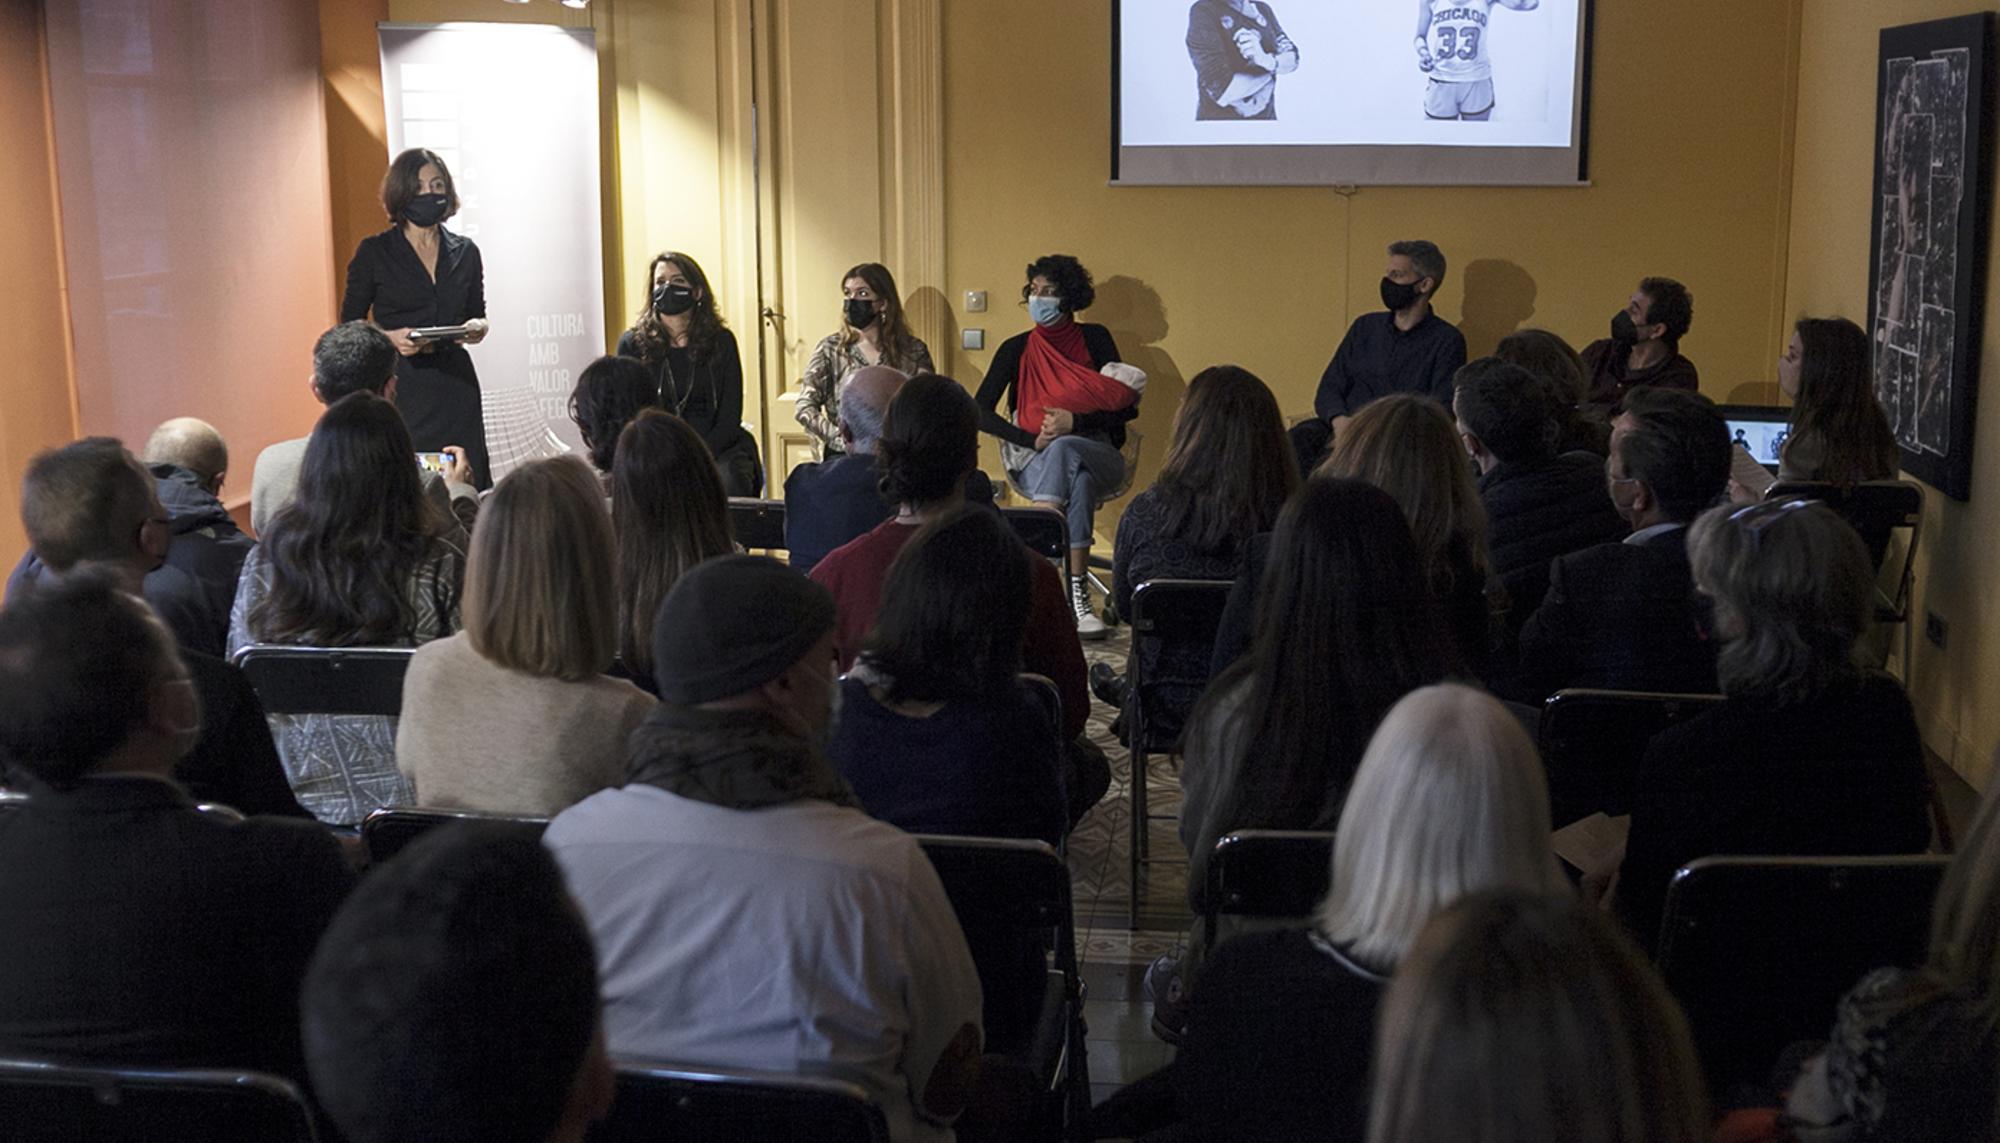 Presentación del fotolibro "BRIANS: Mujeres invisibles" en la sede de la Fundación SETBA